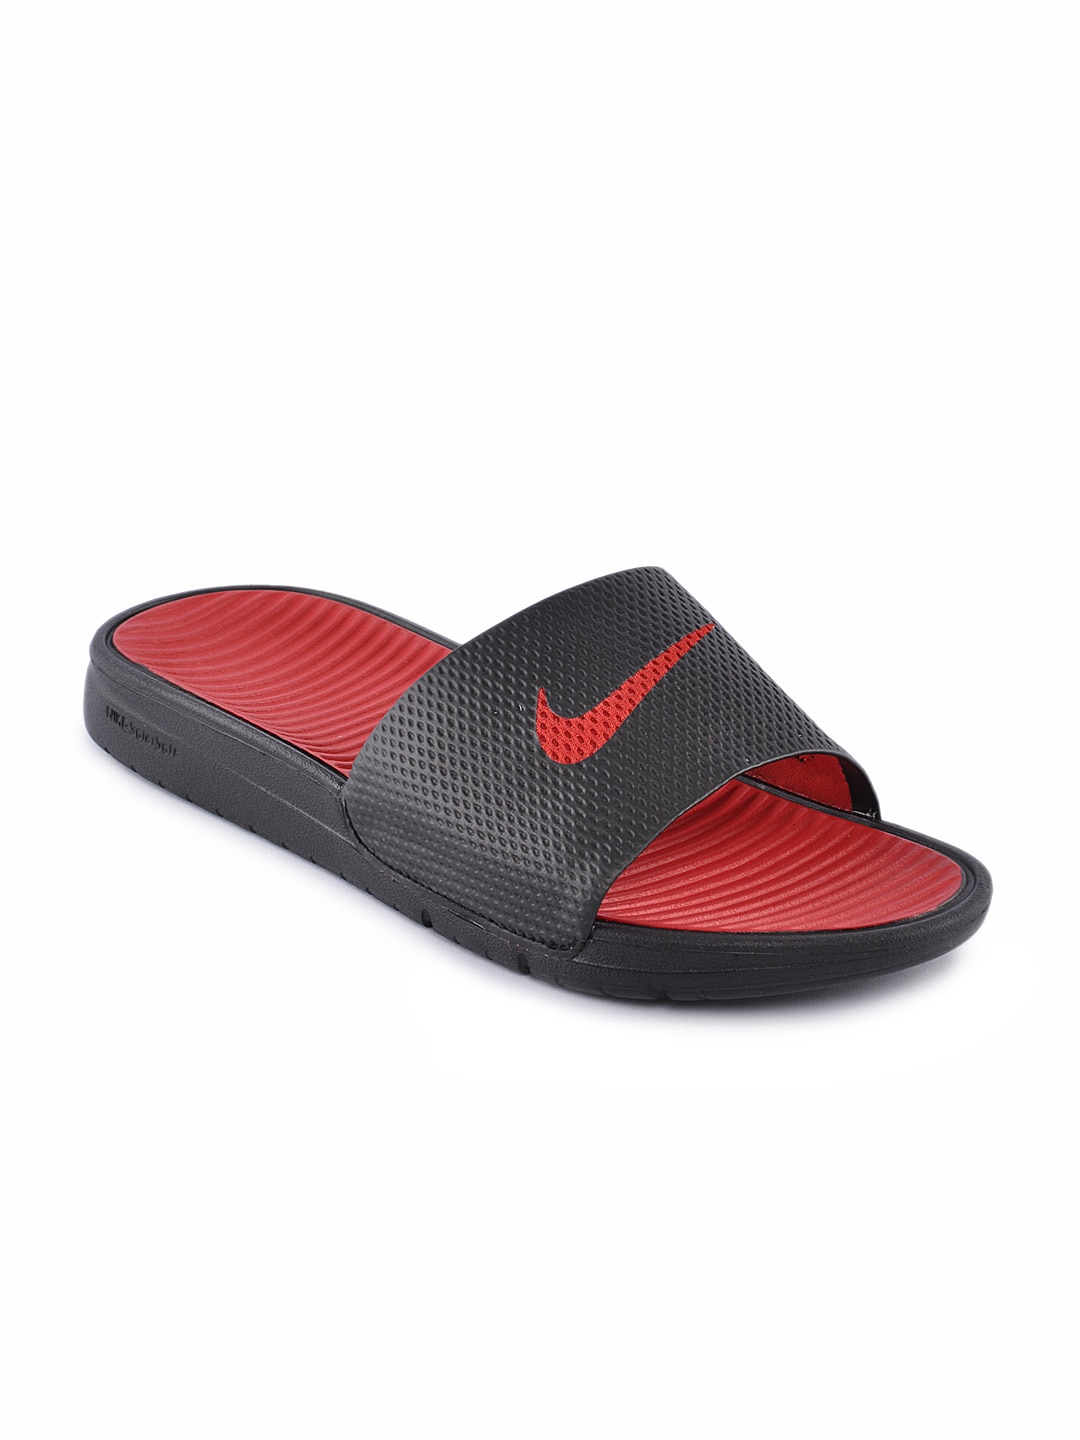 Nike Men Benassi Solarsoft Slide Black Flip Flops